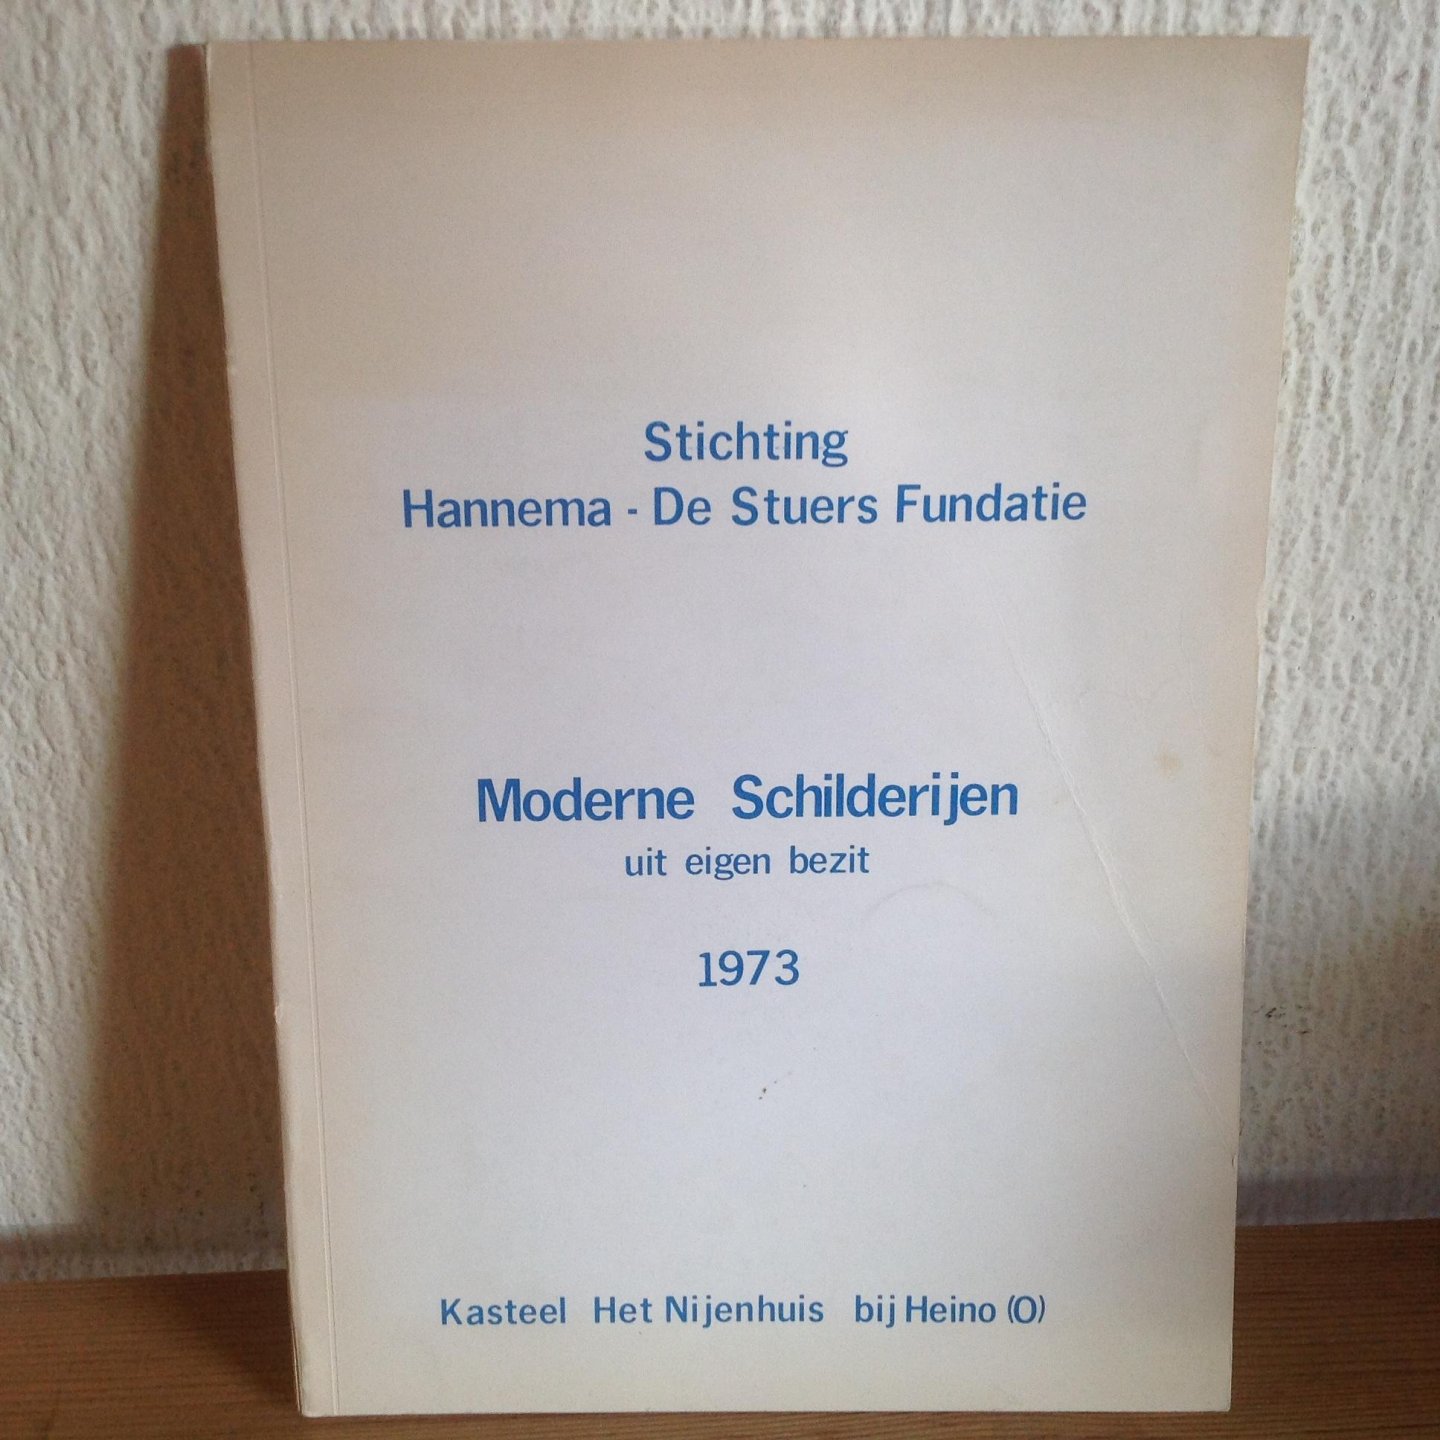  - Moderne schilderijen uit eigen bezit 1973, Stichting De Sters Fundatie